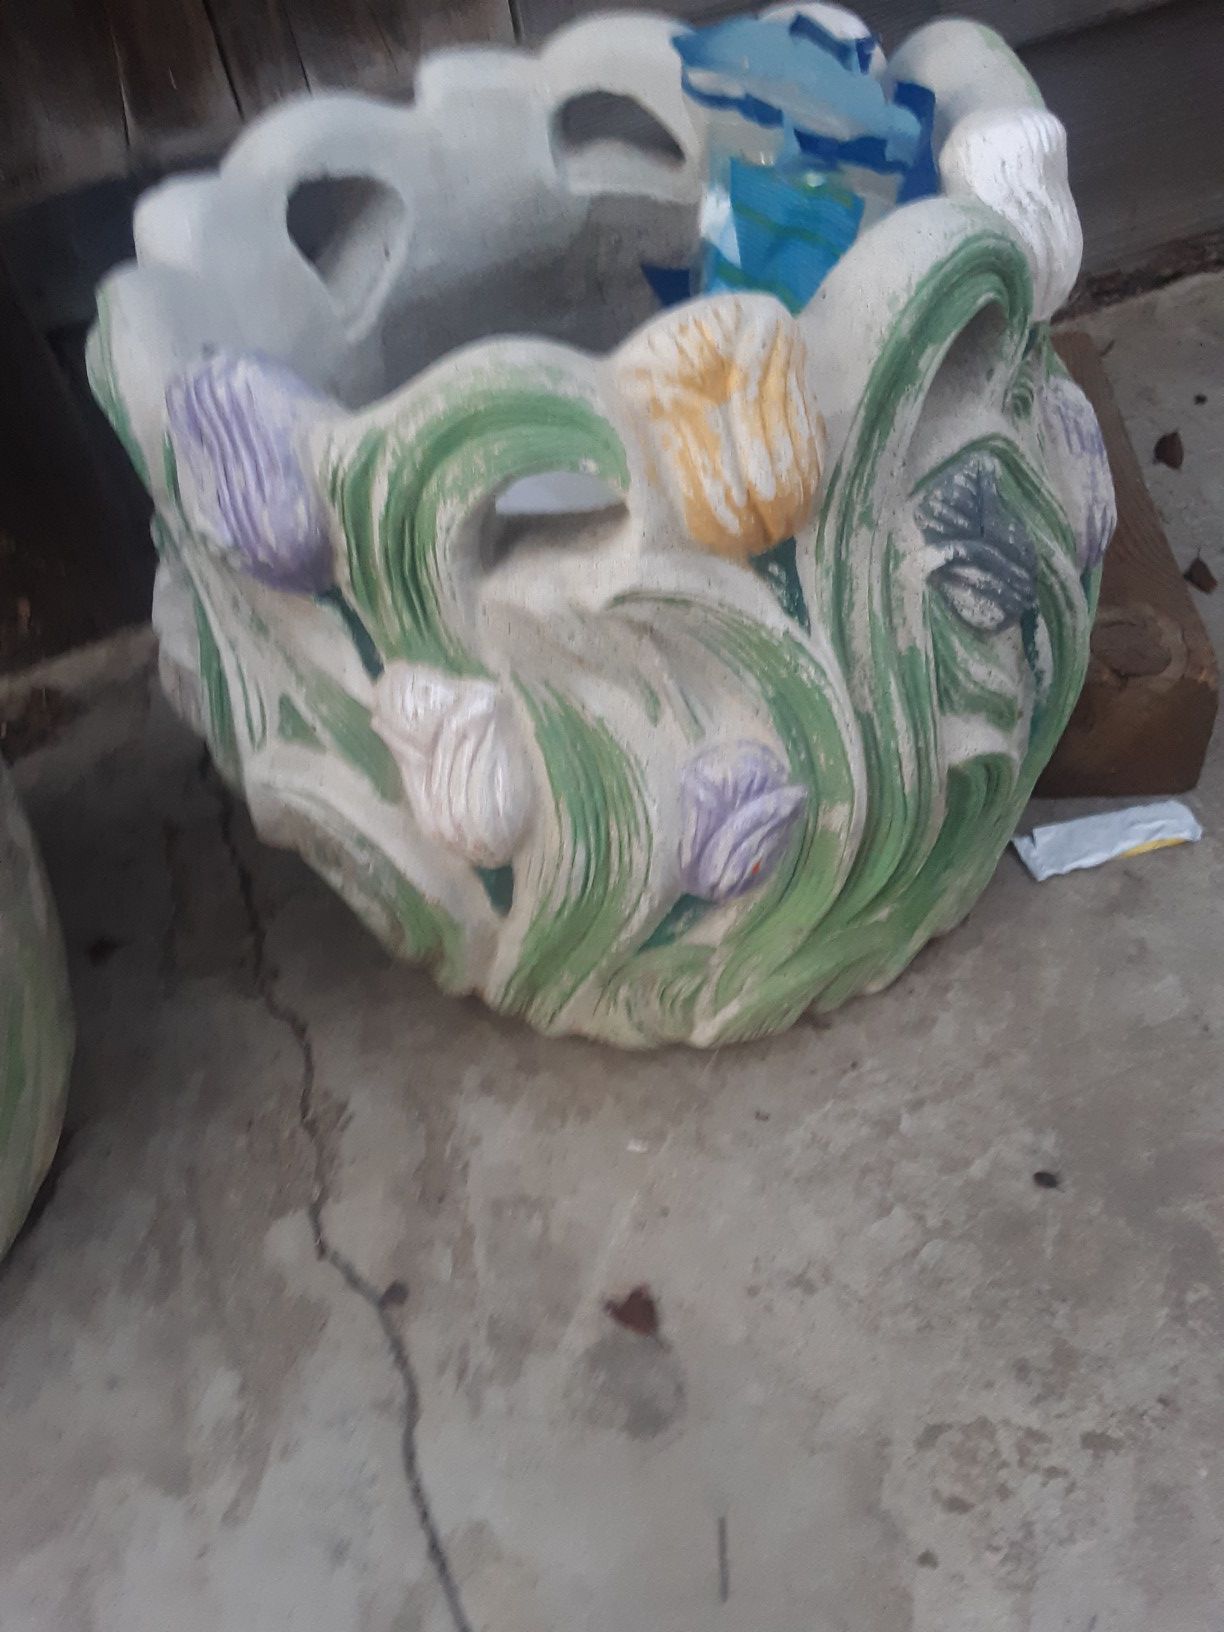 Big heavy flower pots....hecho en Mexico